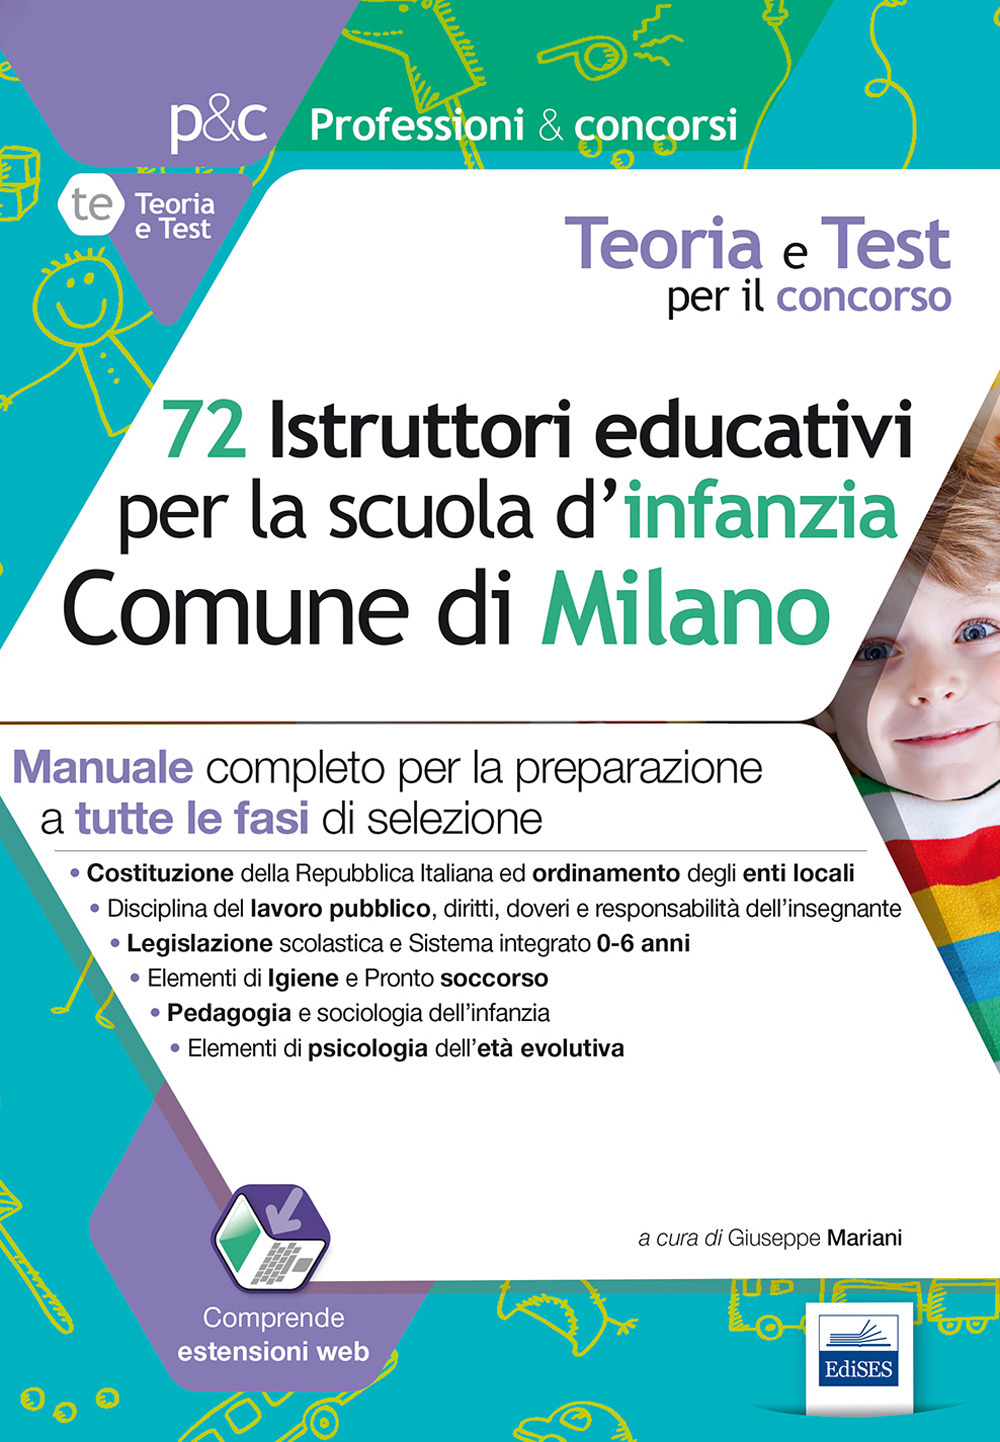 72 istruttori dei servizi educativi per la scuola dell'infanzia nel Comune di Milano